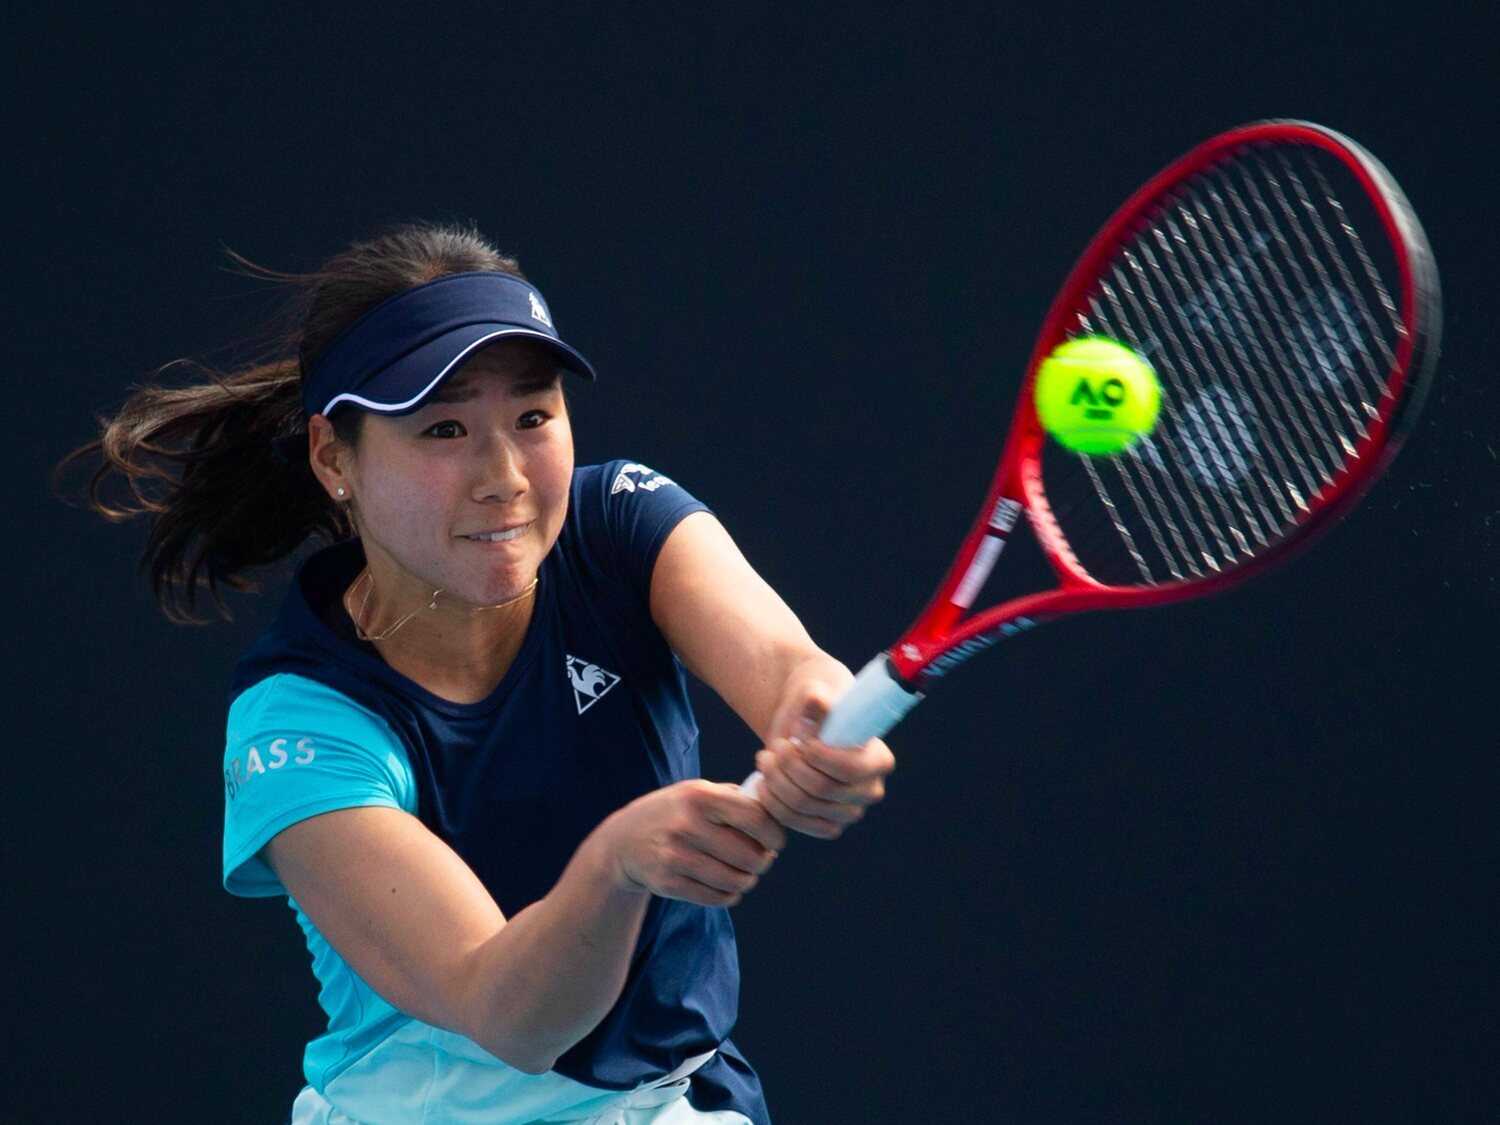 La tenista china Shuai Peig, desaparecida tras denunciar que había sido violada por un alto cargo del país